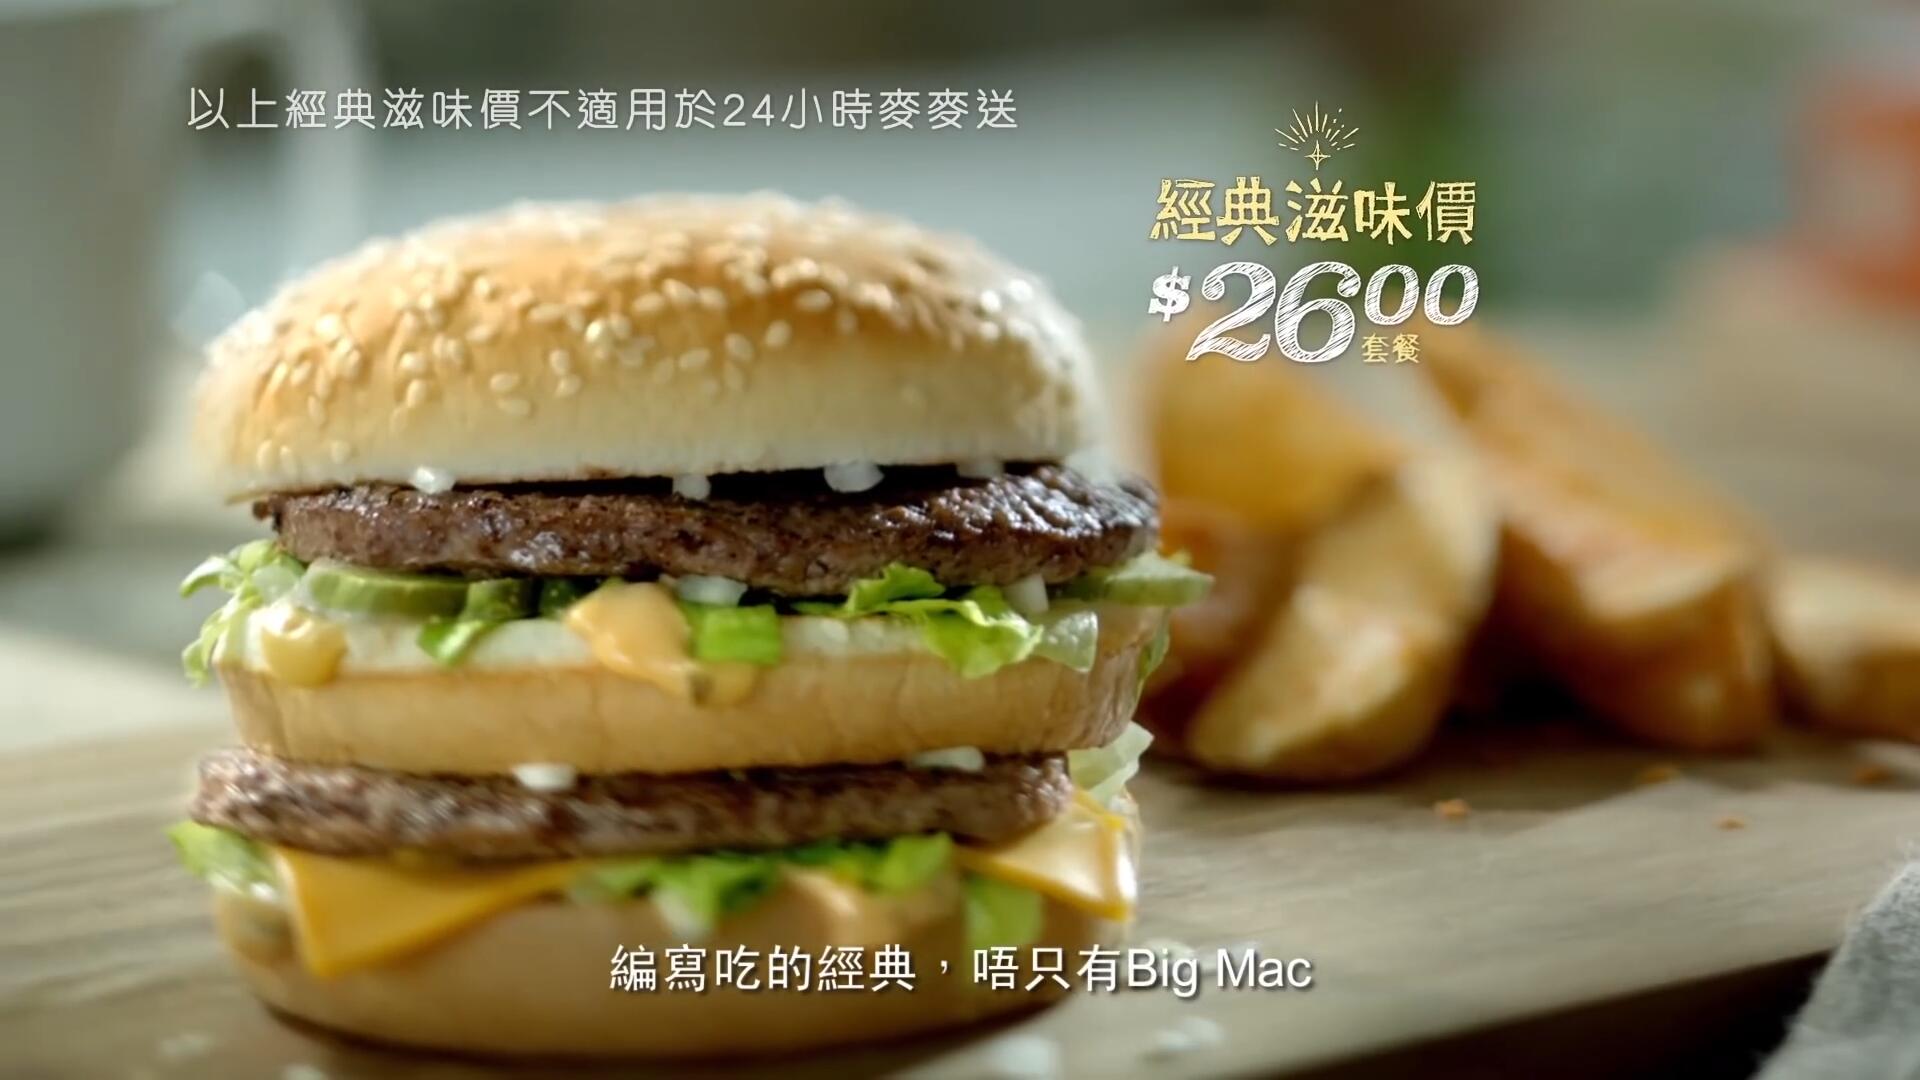 《麦当劳 经典滋味 Big Mac》电视广告